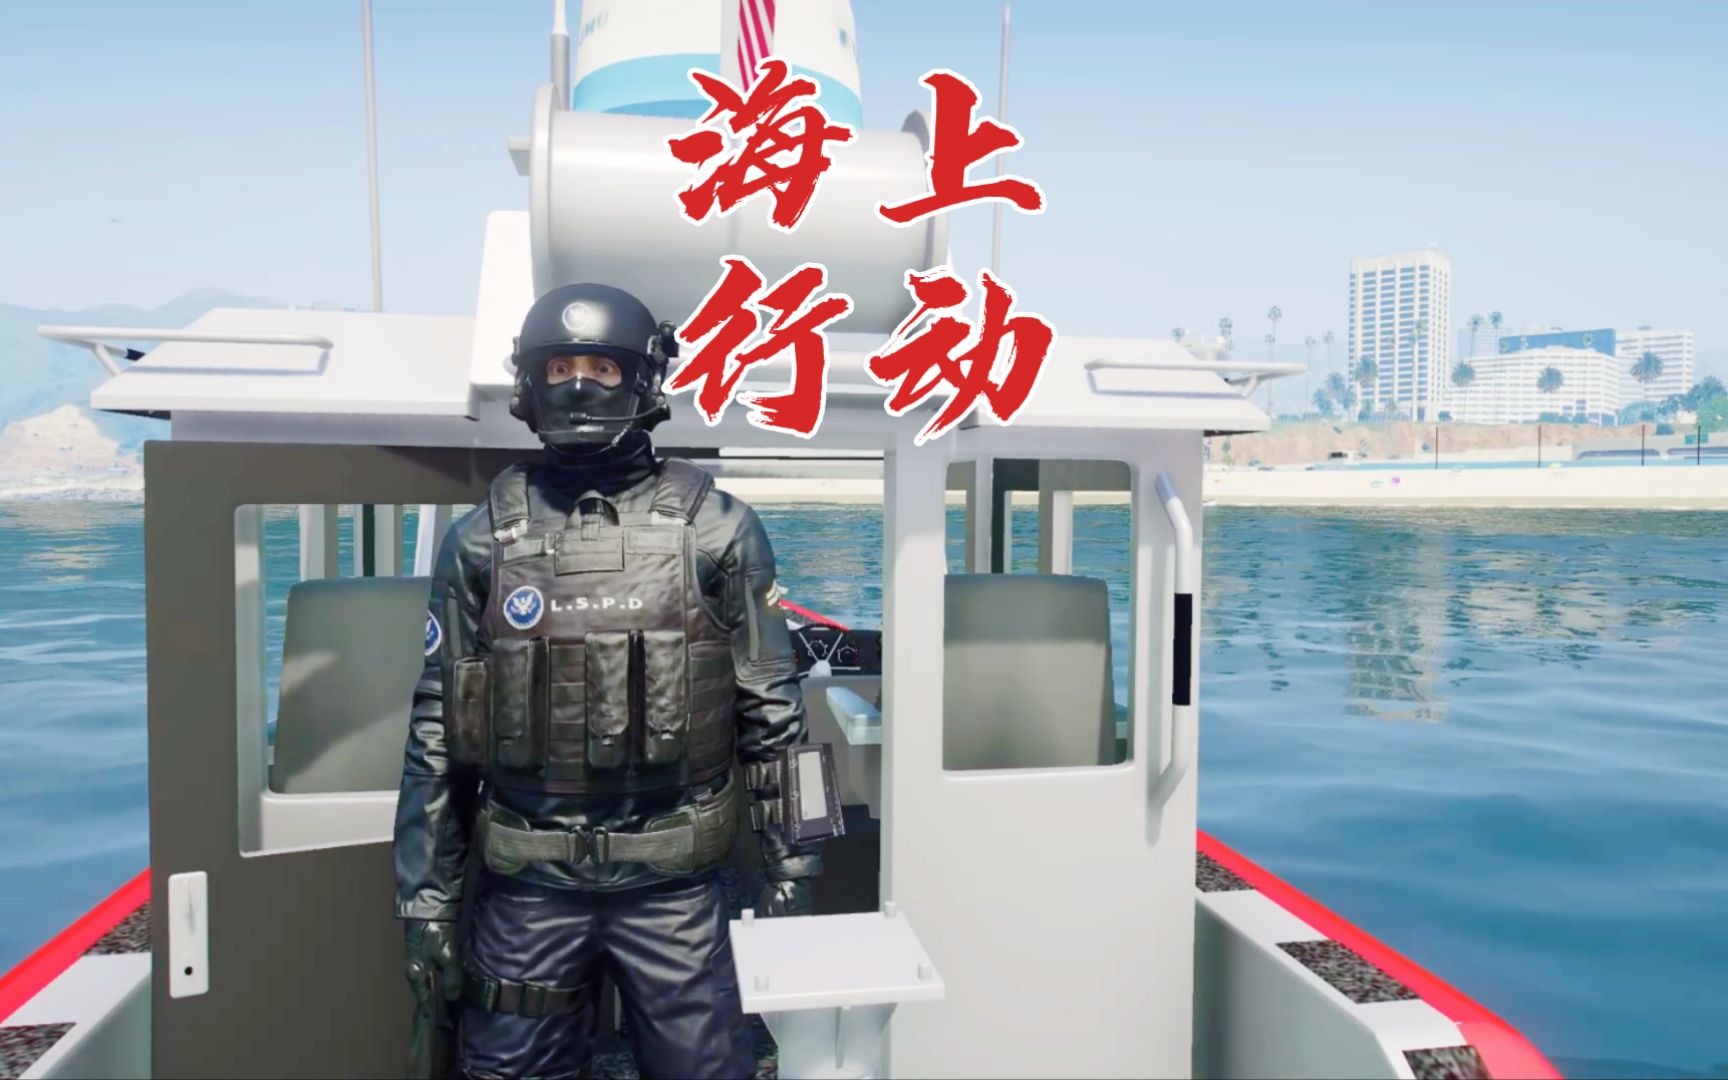 日常警察模拟器 海上巡逻任务 发现一个豪华游艇